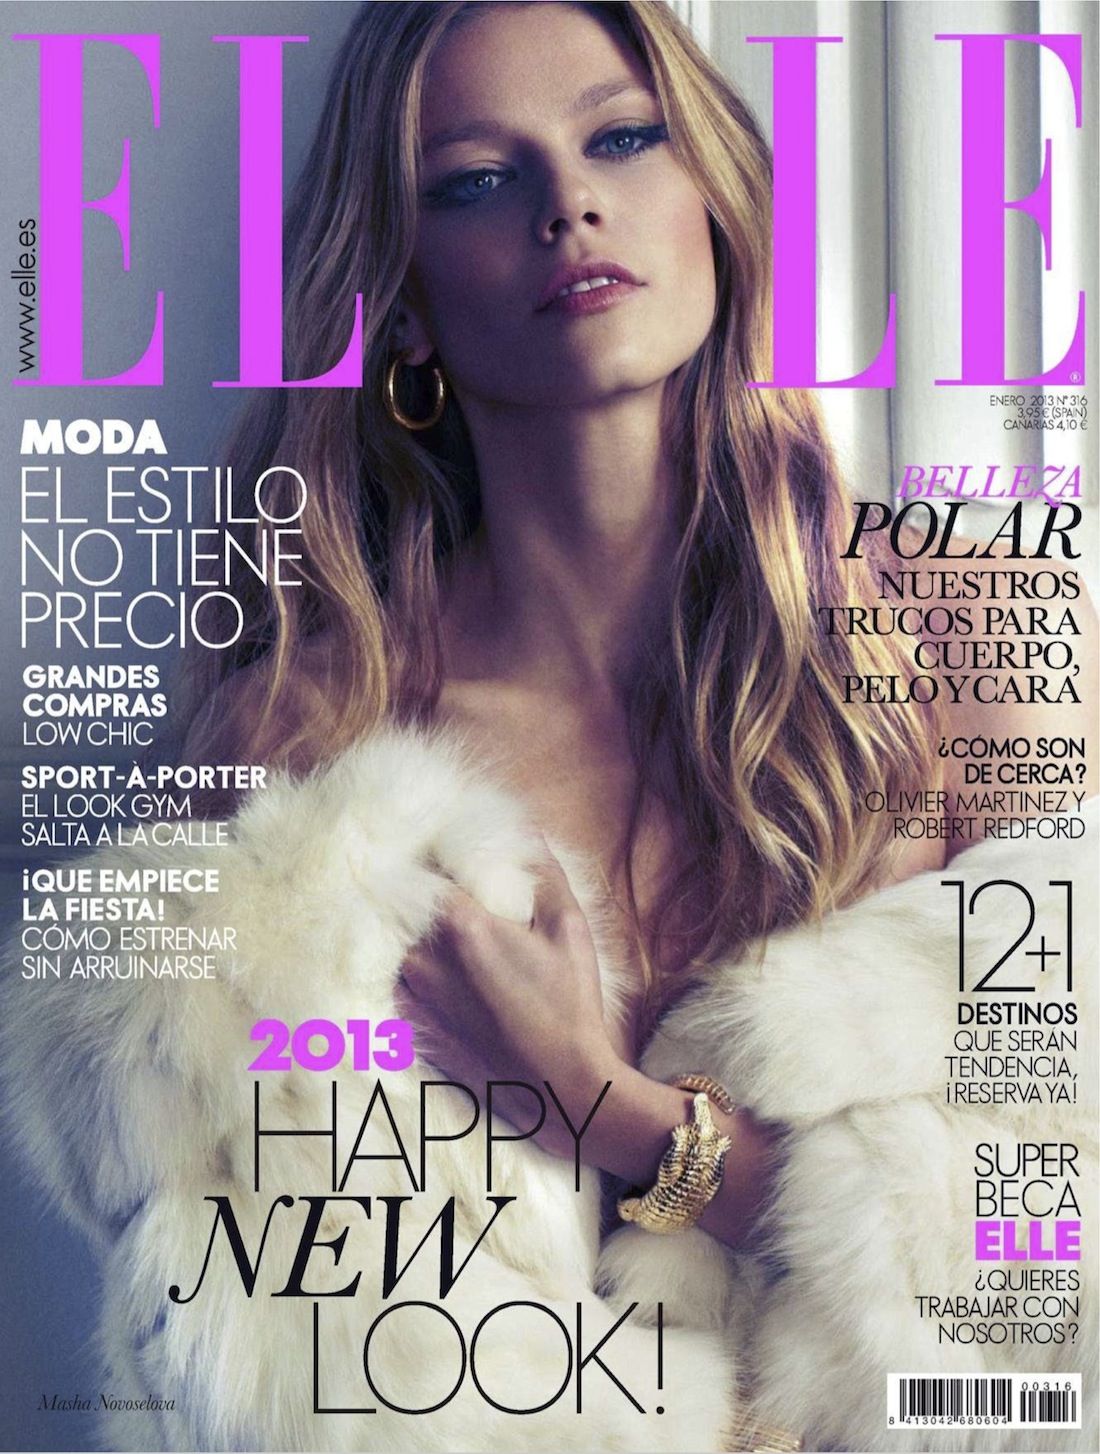 Masha-Novoselova-Xavi-Gordo-Elle-Spain-January-2013-1